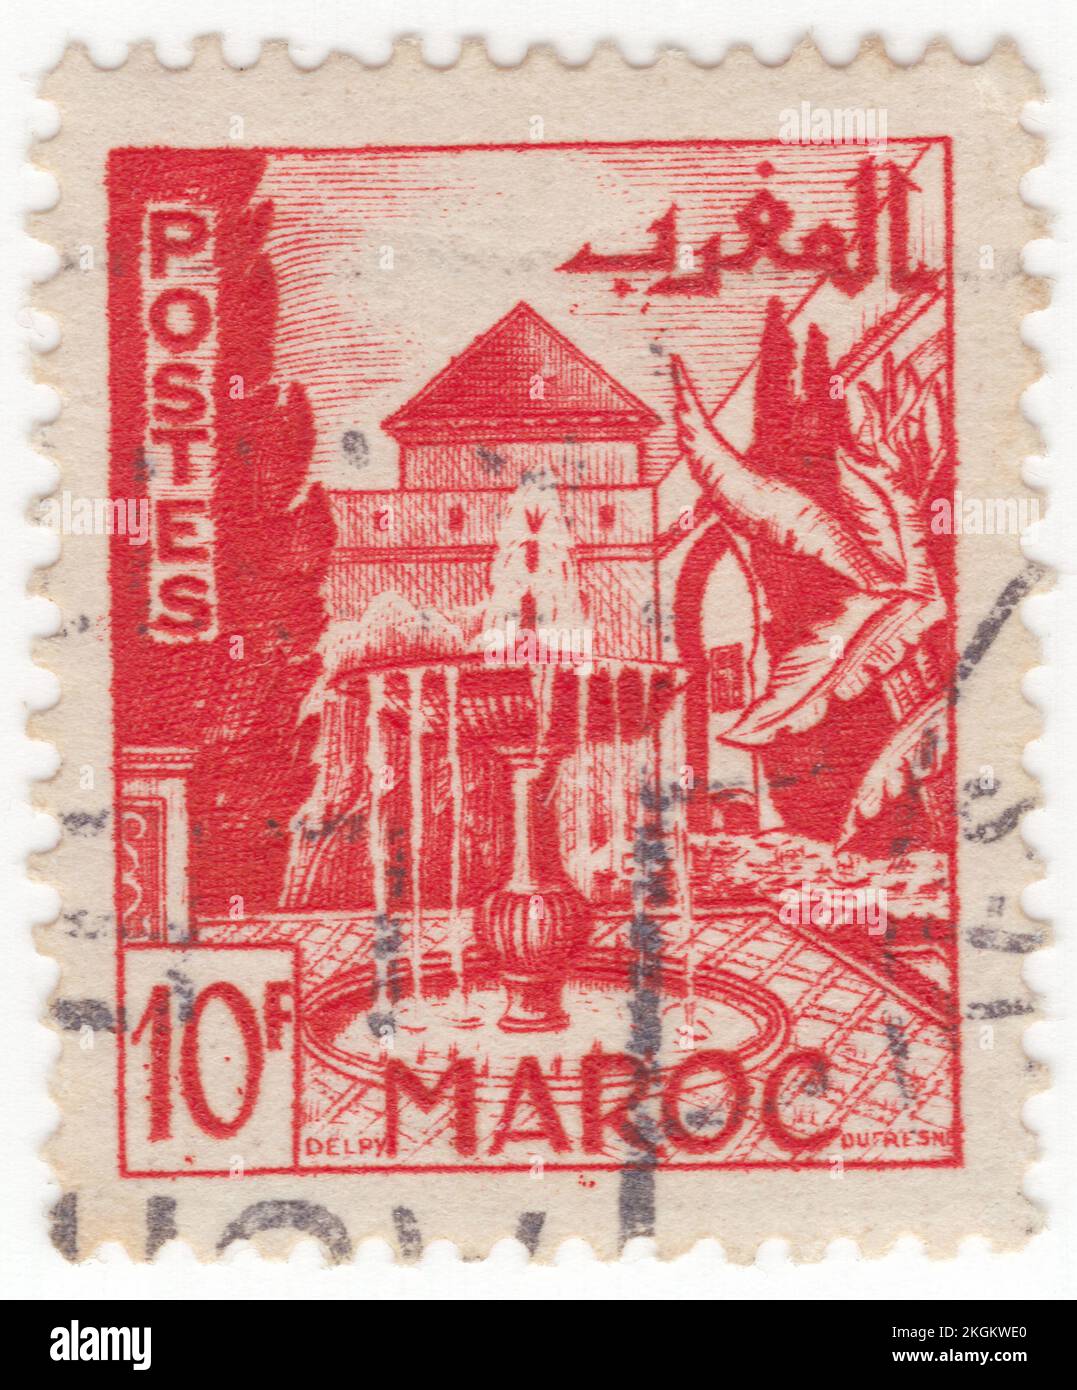 MAROCCO FRANCESE - 1949: Un francobollo rosso brillante da 10 franchi raffigurante il Giardino, Meknes, è una delle quattro città imperiali del Marocco, situata nel nord del Marocco centrale e la sesta città più grande per popolazione del regno. Fondata nel 11th ° secolo dagli Almoravidi come insediamento militare, Meknes divenne la capitale del Marocco sotto il regno del sultano Moulay Ismail (1672-1727), figlio del fondatore della dinastia Alaouite. Moulay Ismail creò un massiccio palazzo imperiale e dotò la città di ampie fortificazioni e porte monumentali Foto Stock